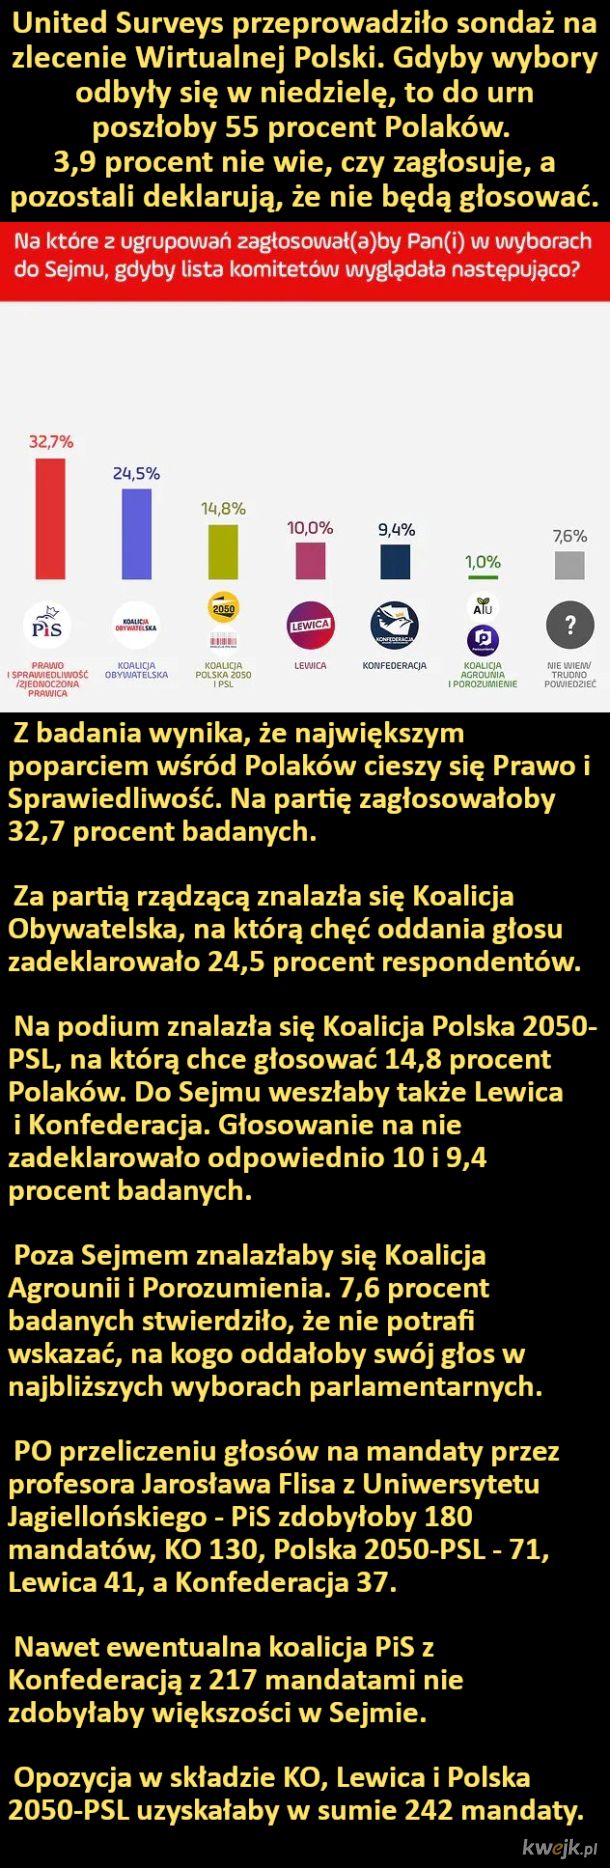 Na kogo Polacy zagłosowaliby, gdyby wybory odbyły się w niedzielę?